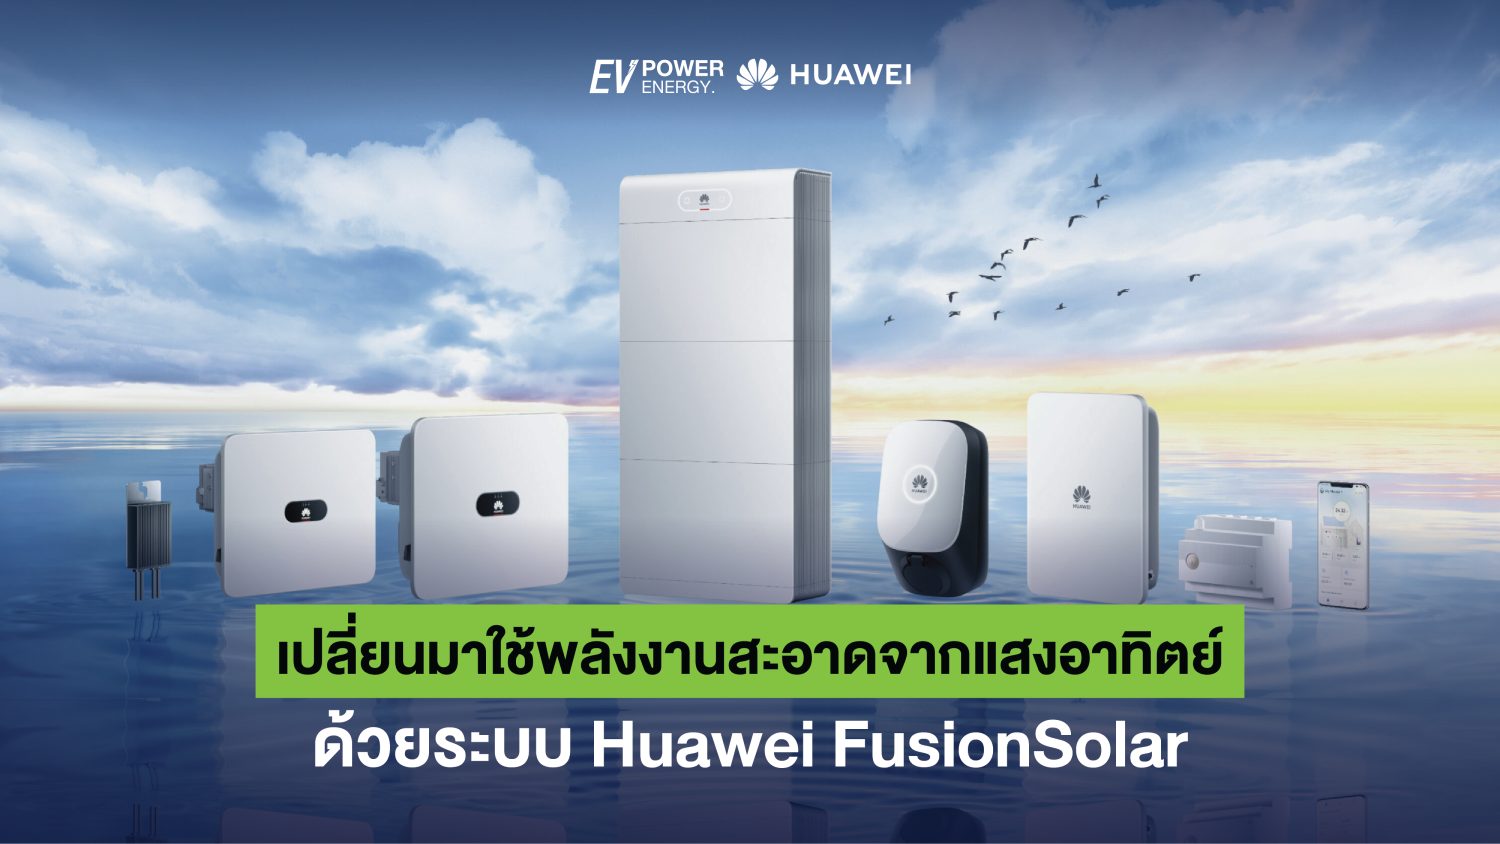 เปลี่ยนมาใช้พลังงานสะอาดจากแสงอาทิตย์ ด้วยระบบ Huawei FusionSolar 1